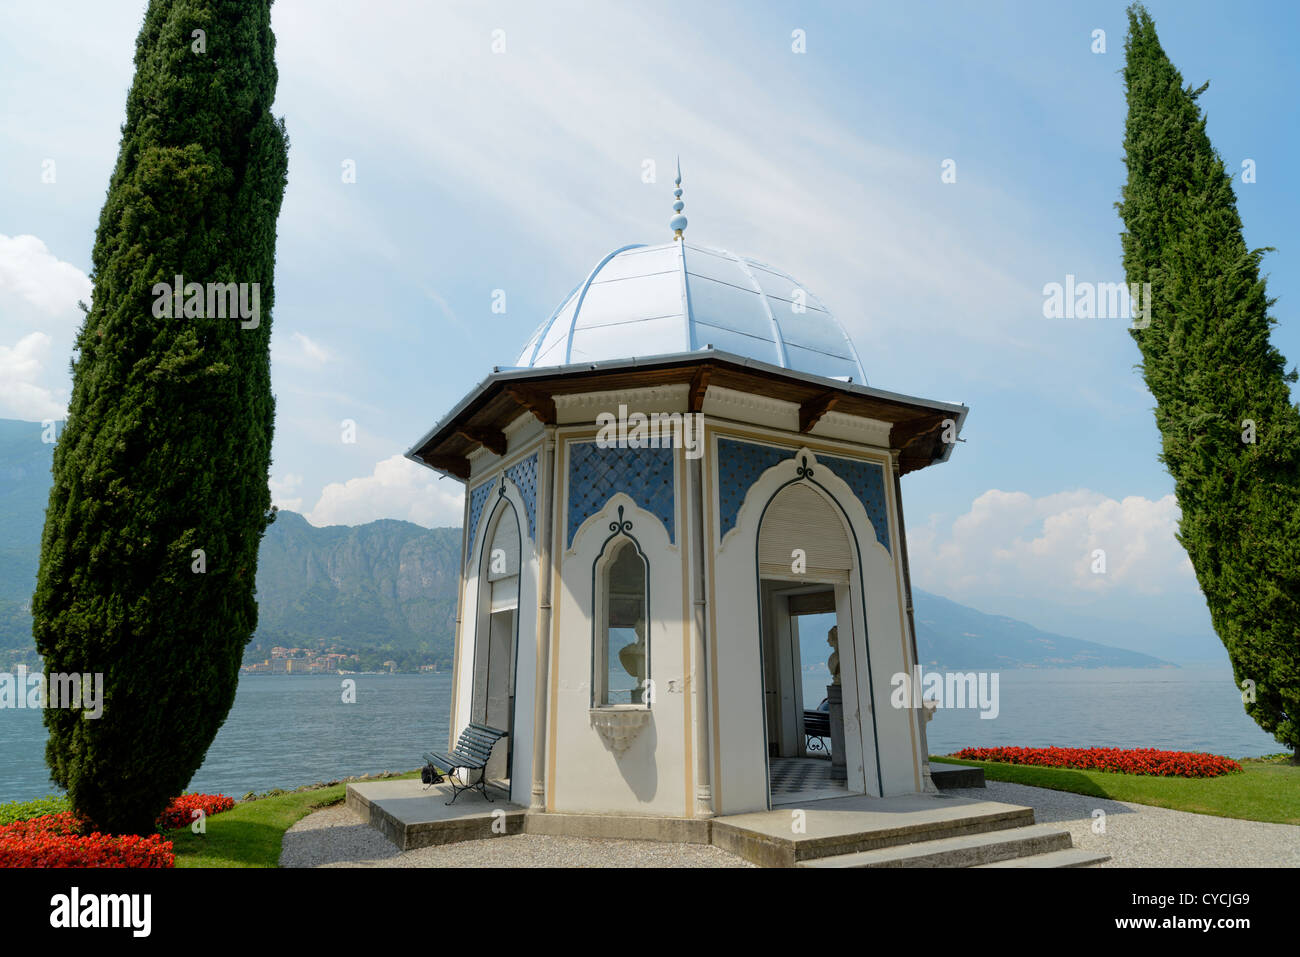 Pavilion,Villa Melzi,Bellagio,Lake Como,Italy,Europe Stock Photo